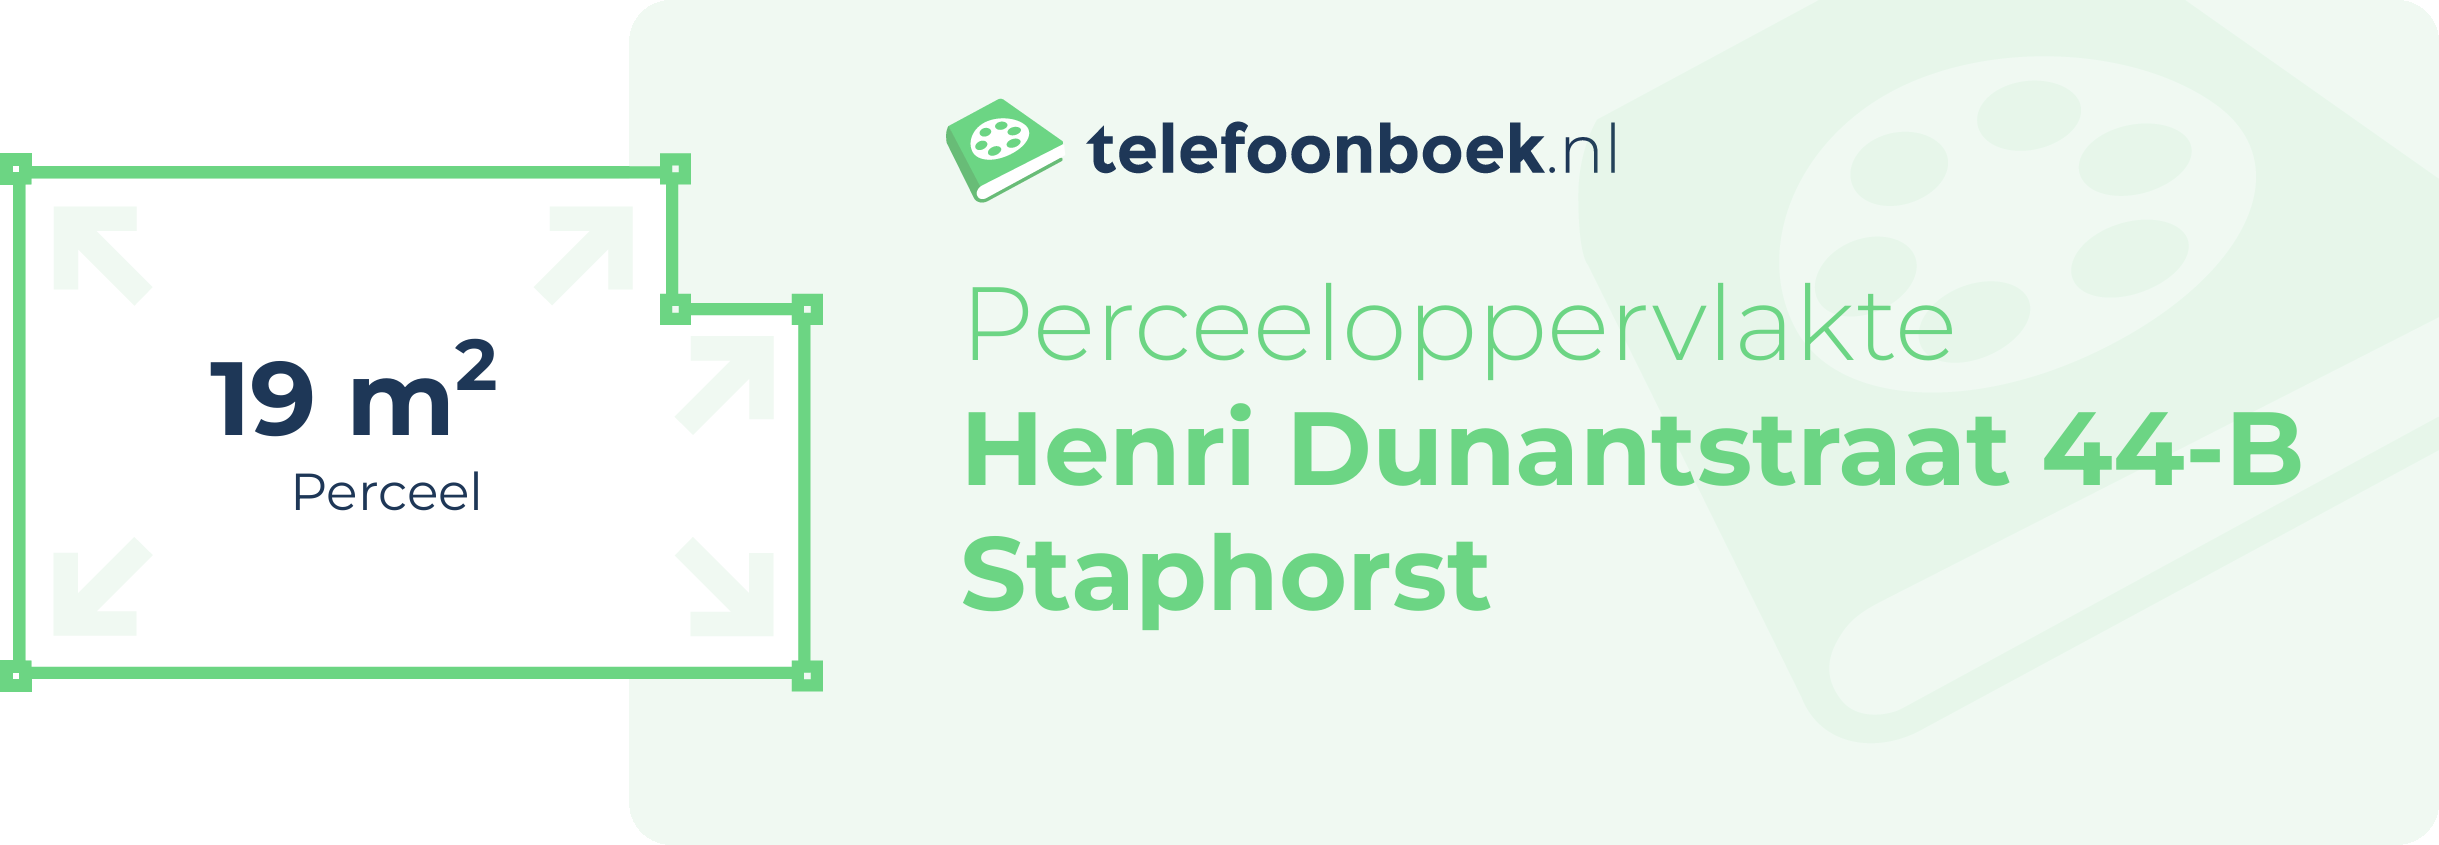 Perceeloppervlakte Henri Dunantstraat 44-B Staphorst